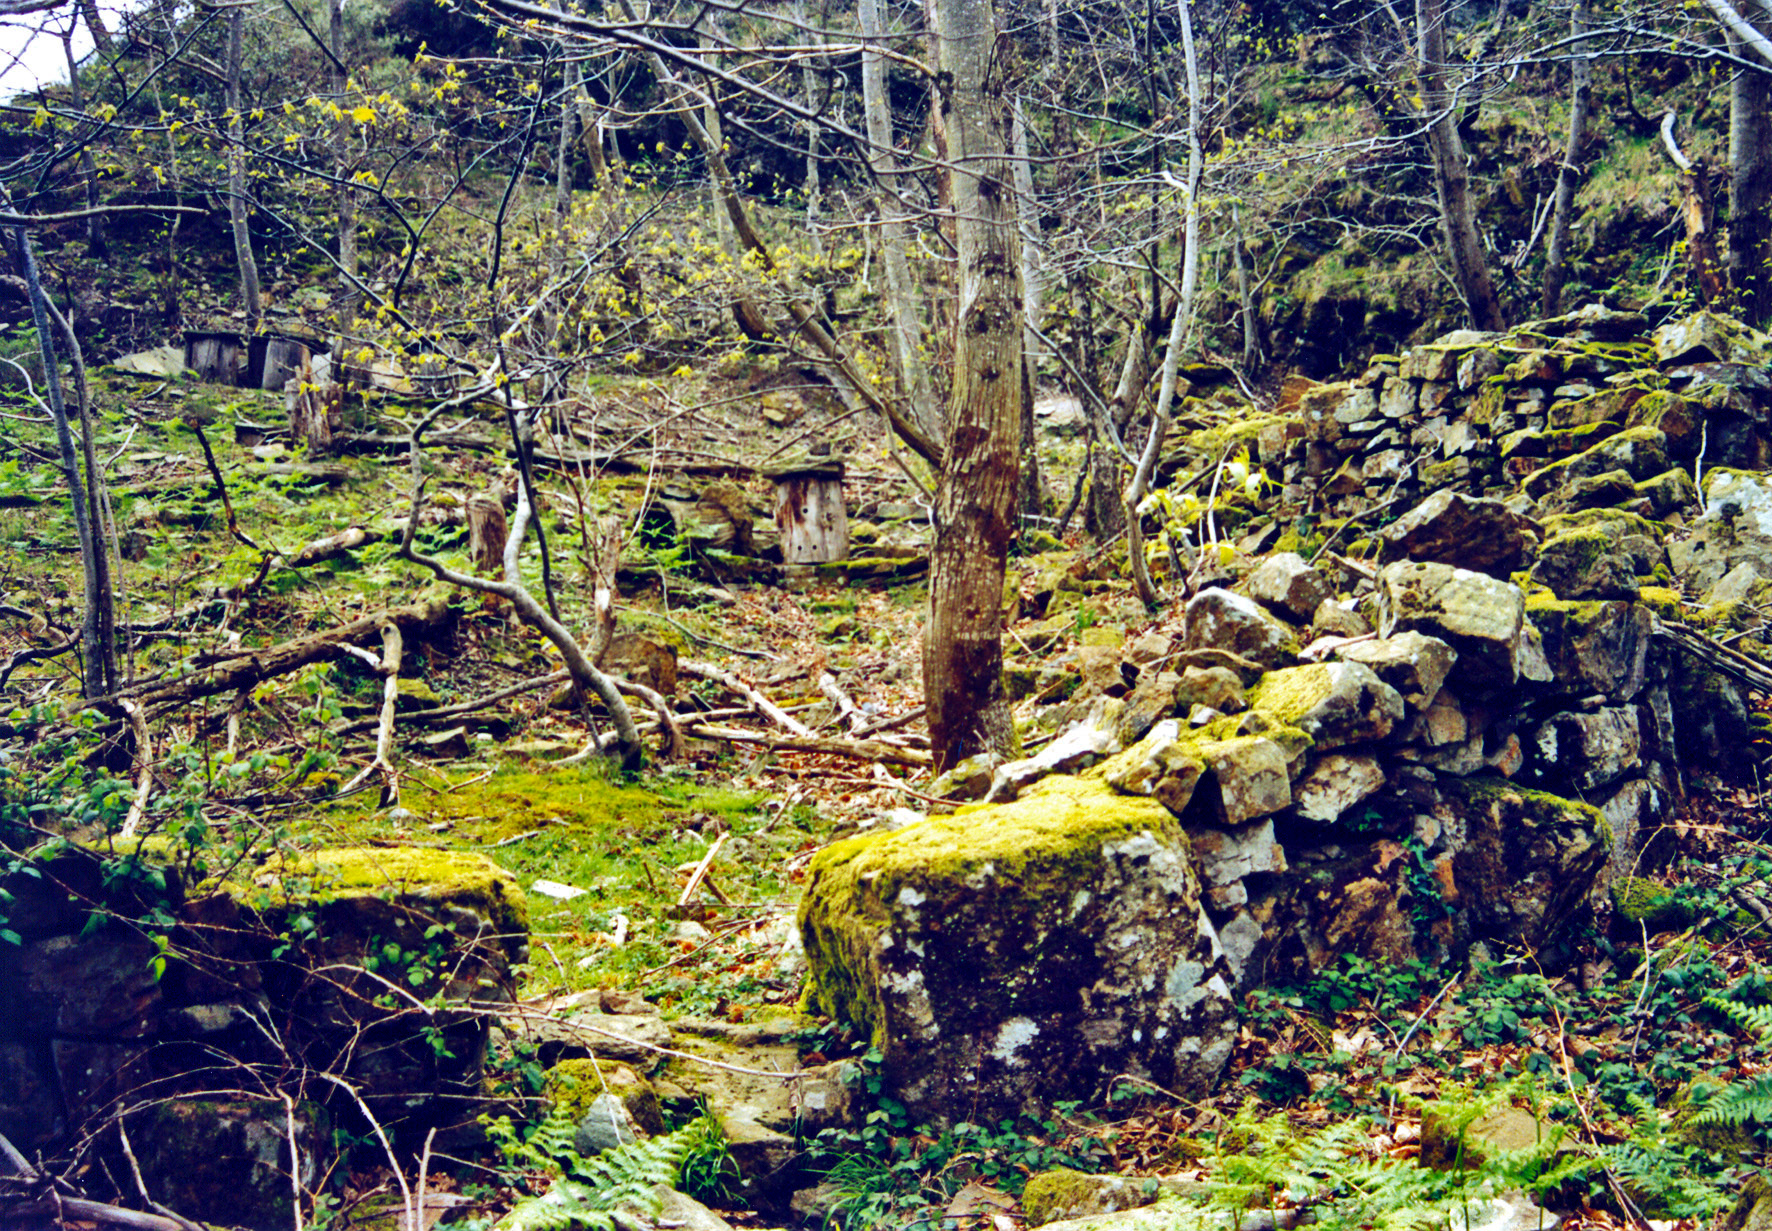 Remains of Los Cepos Vinagre apiary. Miguel Sabino Díaz